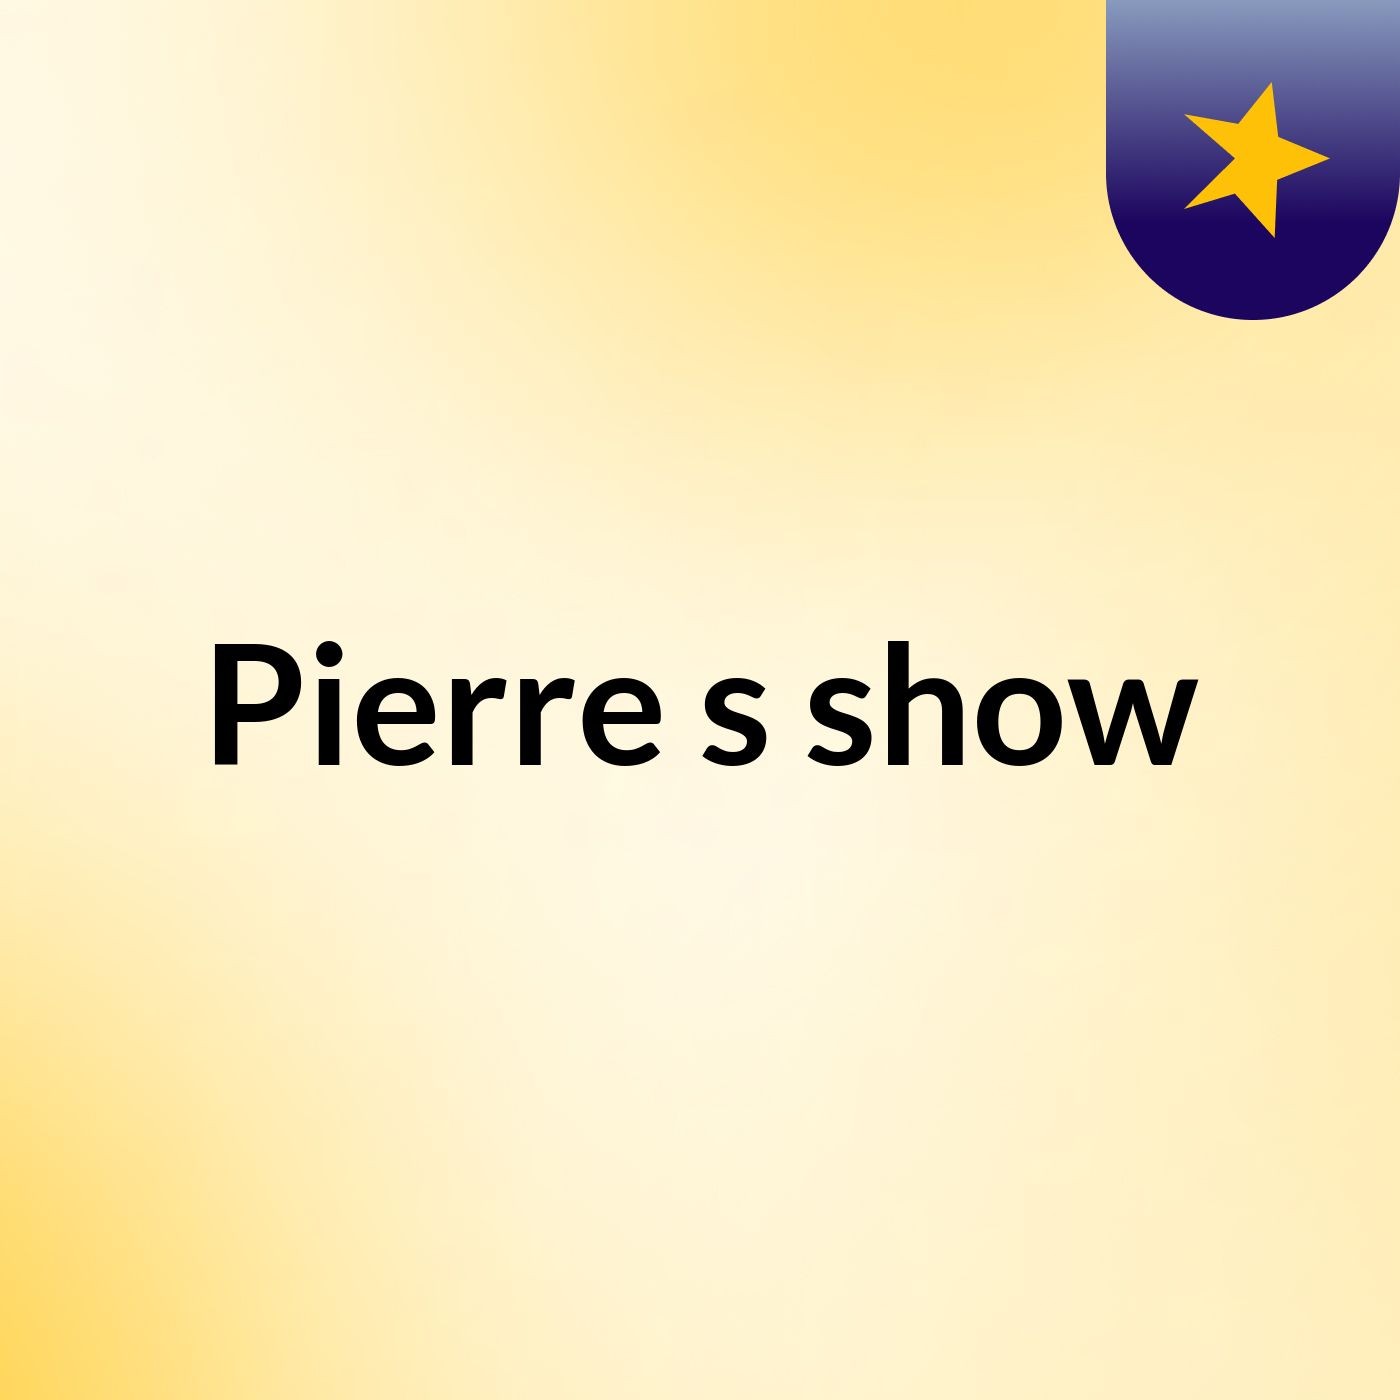 Pierre's show